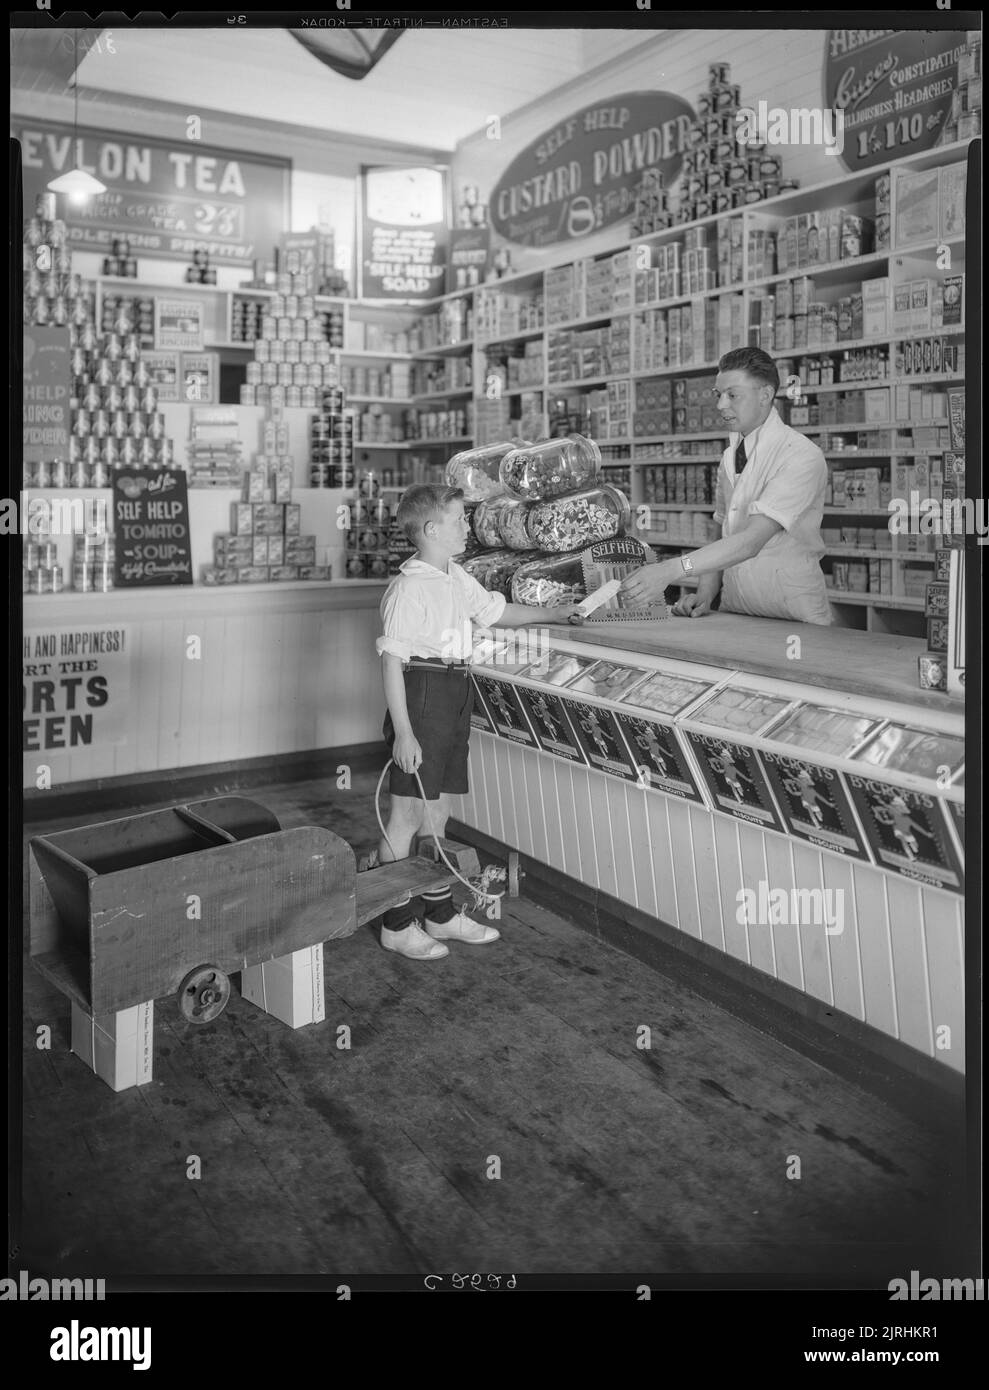 Self Help Co-op Grocery Store, à l'angle de la rue Mulgrave et du quai Lambton, 1932-1933, Wellington, par Ken Niven, Gordon H. Burt Ltd Banque D'Images